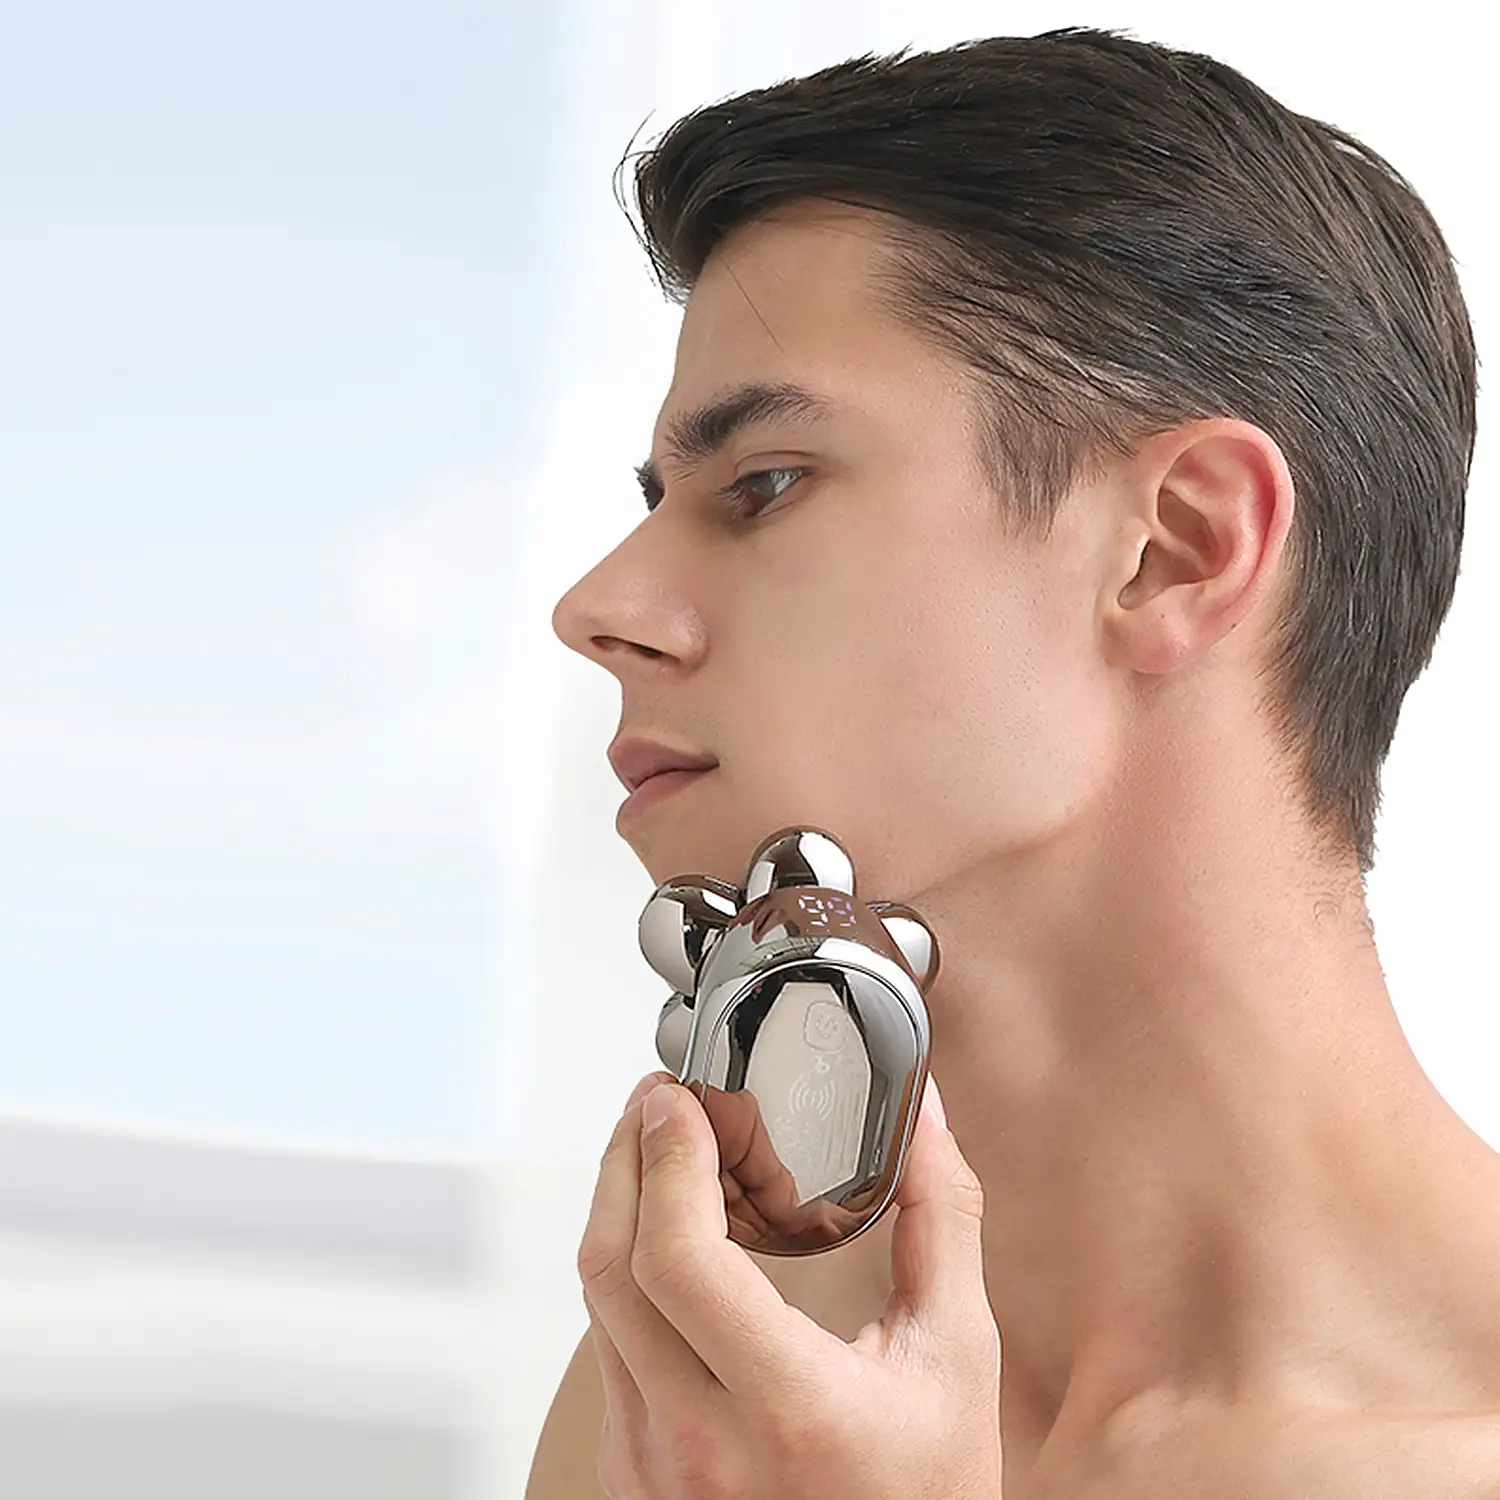 Máquina de afeitar 5 en 1 con cabezal 7D. Incluye cabezal de recorte, para nariz, de masaje, cepillo y de rasurado. Base de carga  y batería recargable.